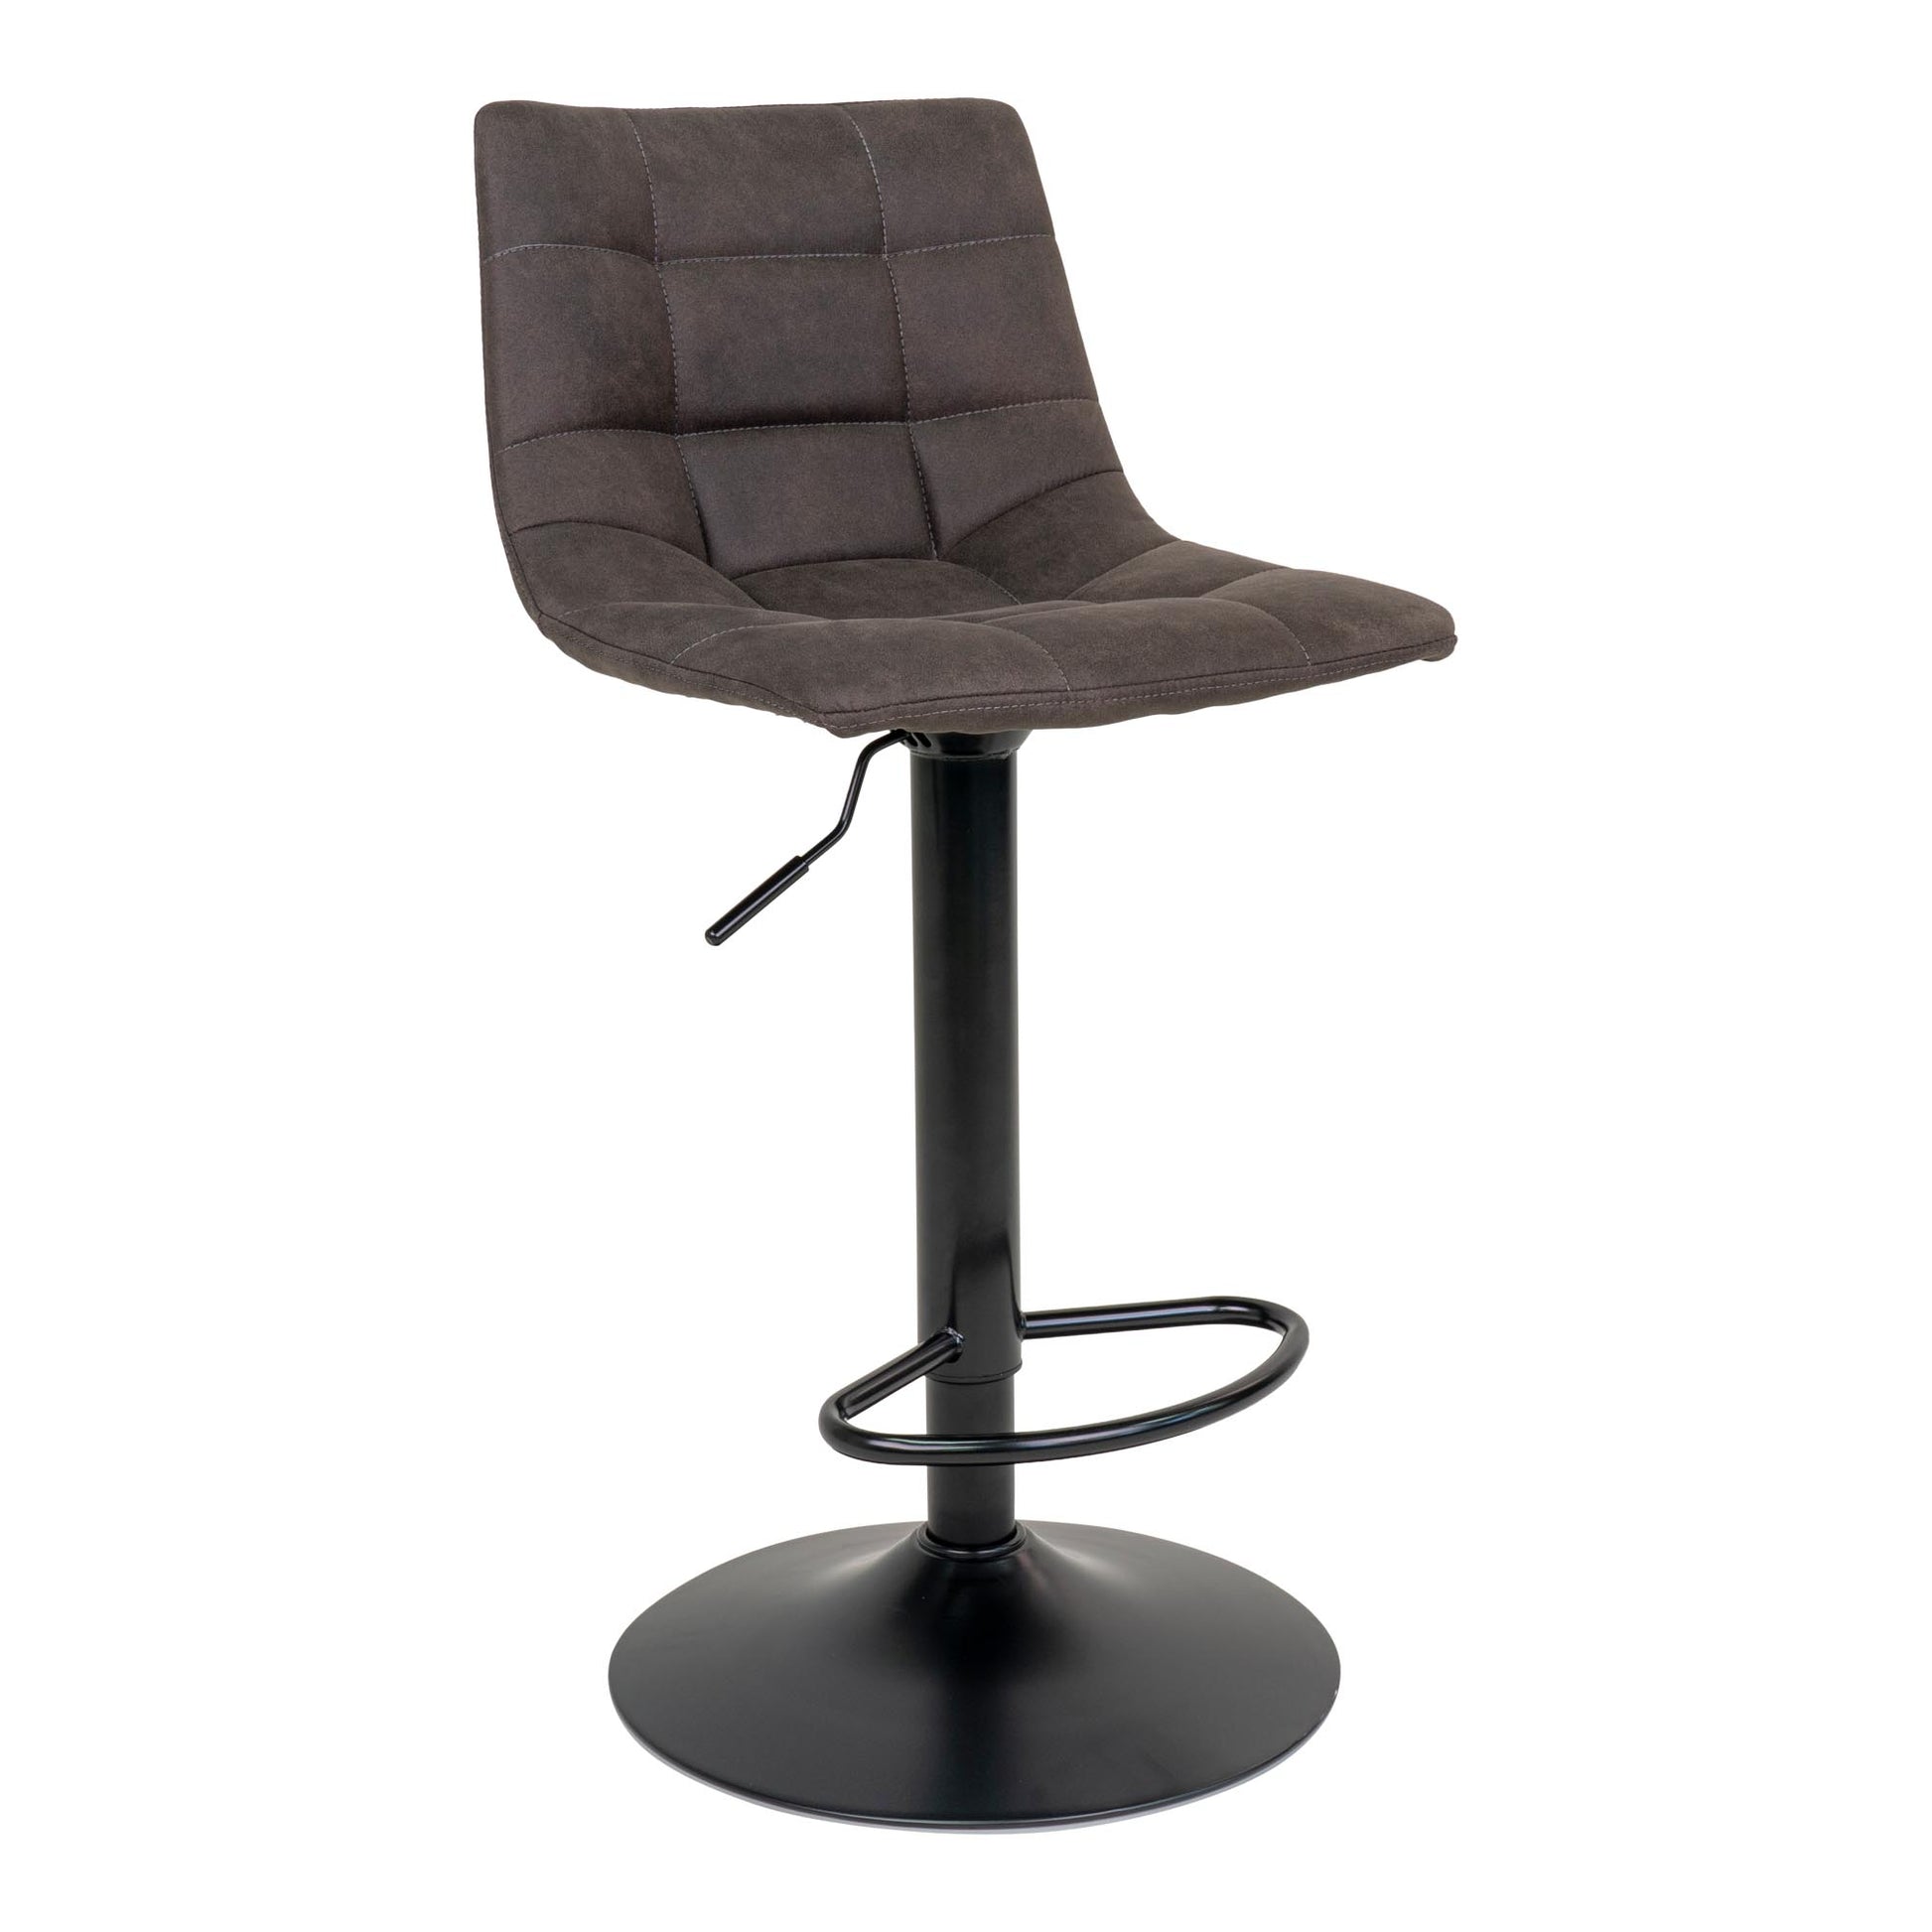 Middelfart Bar Chair - Barstoel in donkergrijs met zwarte poten - set van 2-Stoel-House Nordic-middelfart-bar-chair-bar-chair-in-dark-grey-with-black-legs-1-barstoel, hoge stoel, MIN2, stoel-Barstoel in donkergrijs met zwarte poten Materiaal Microvezel, staal Kleur Grijs-5713917009398-1001302-Cerasus Homestyle